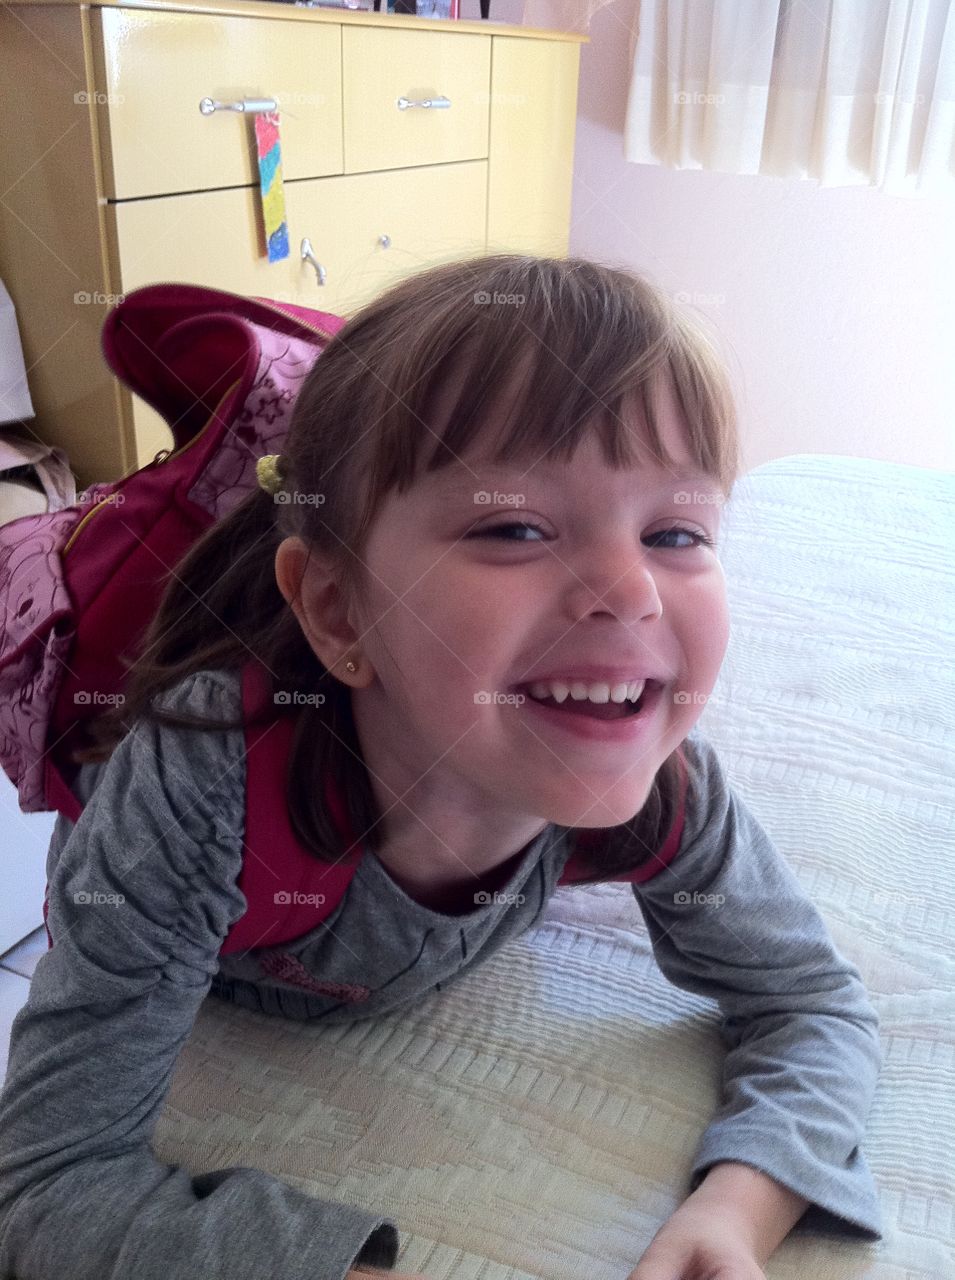 O sorriso mais gostoso do mundo - o da milha filha Marina, estampado com pureza e doçura. 